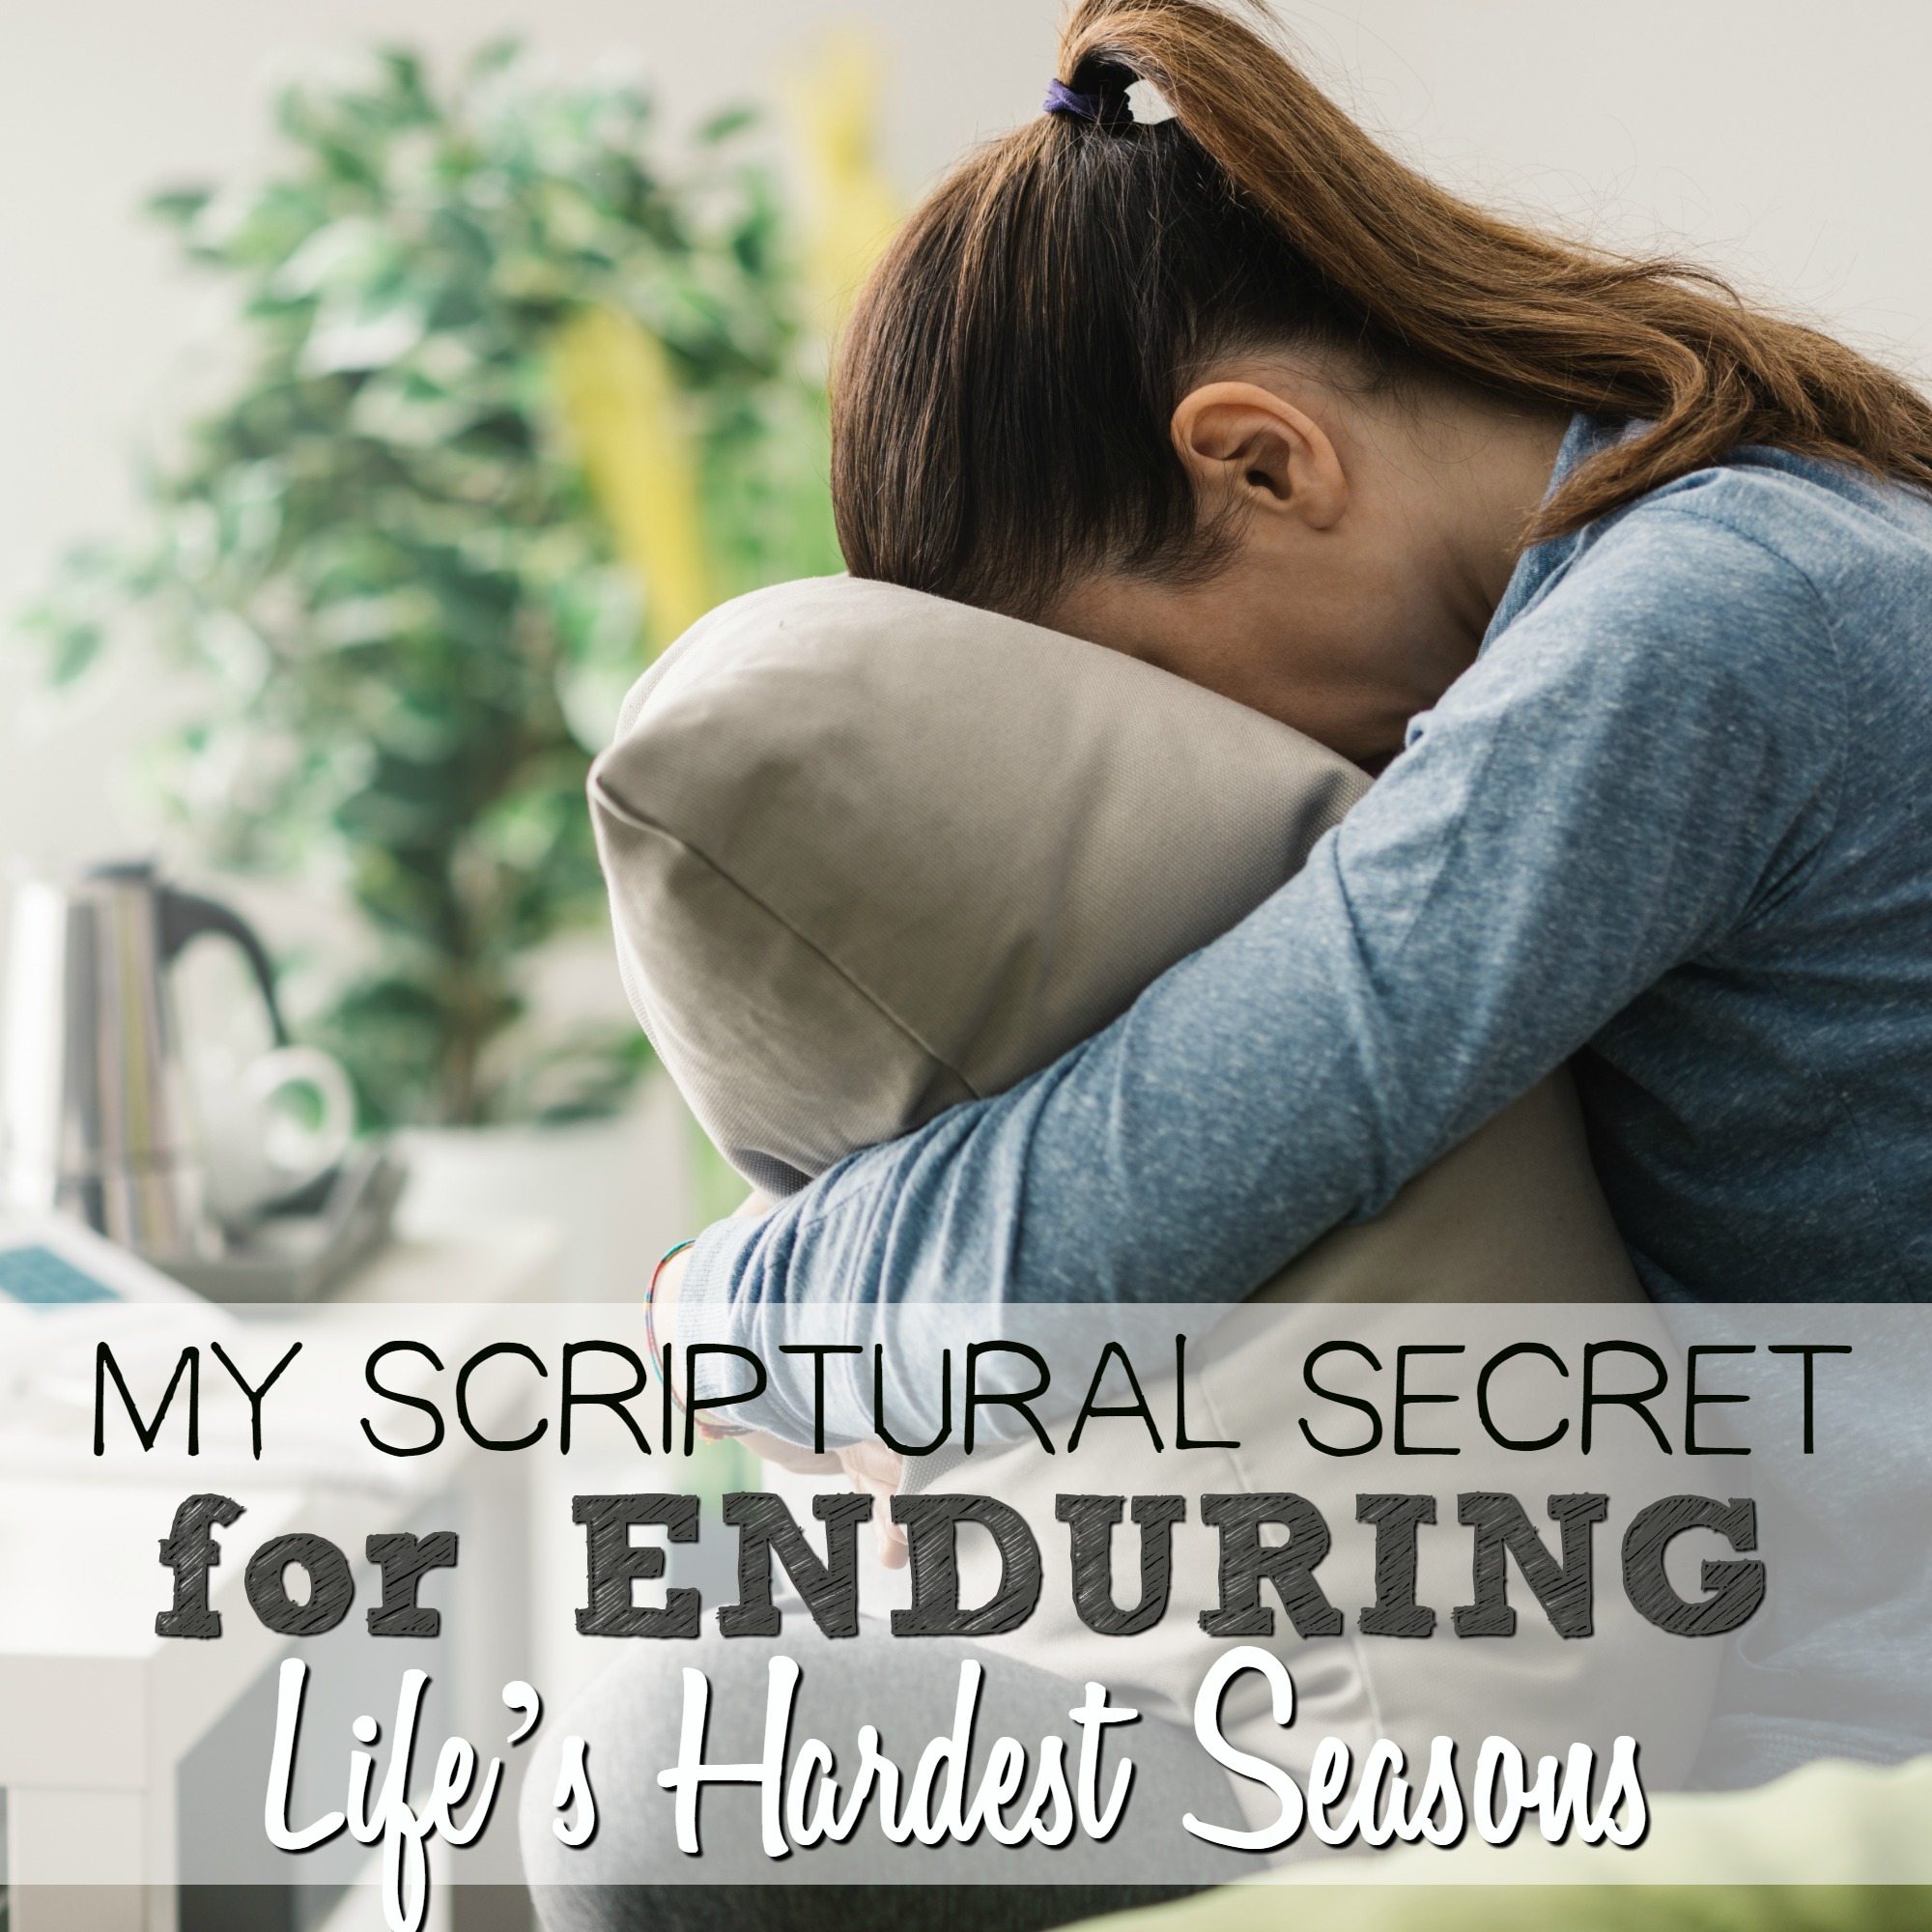 My Scriptural Secret for Enduring Life’s Hardest Seasons